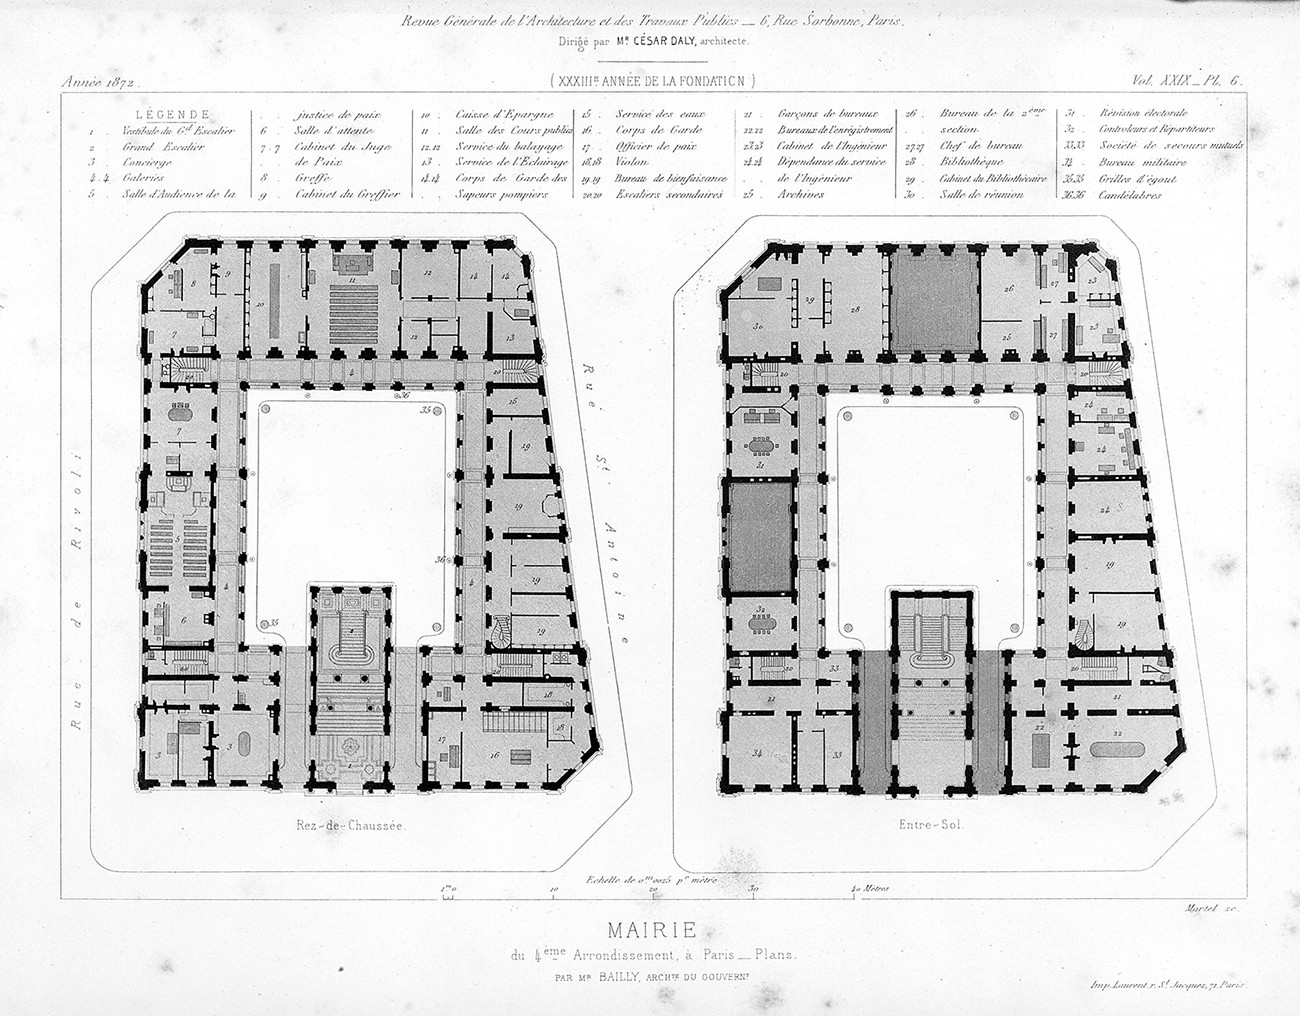 Mairie du IVe arrondissement de Paris, 1860, Antoine-Nicolas Bailly, architecte © Revue générale de l’Architecture et des Travaux publics